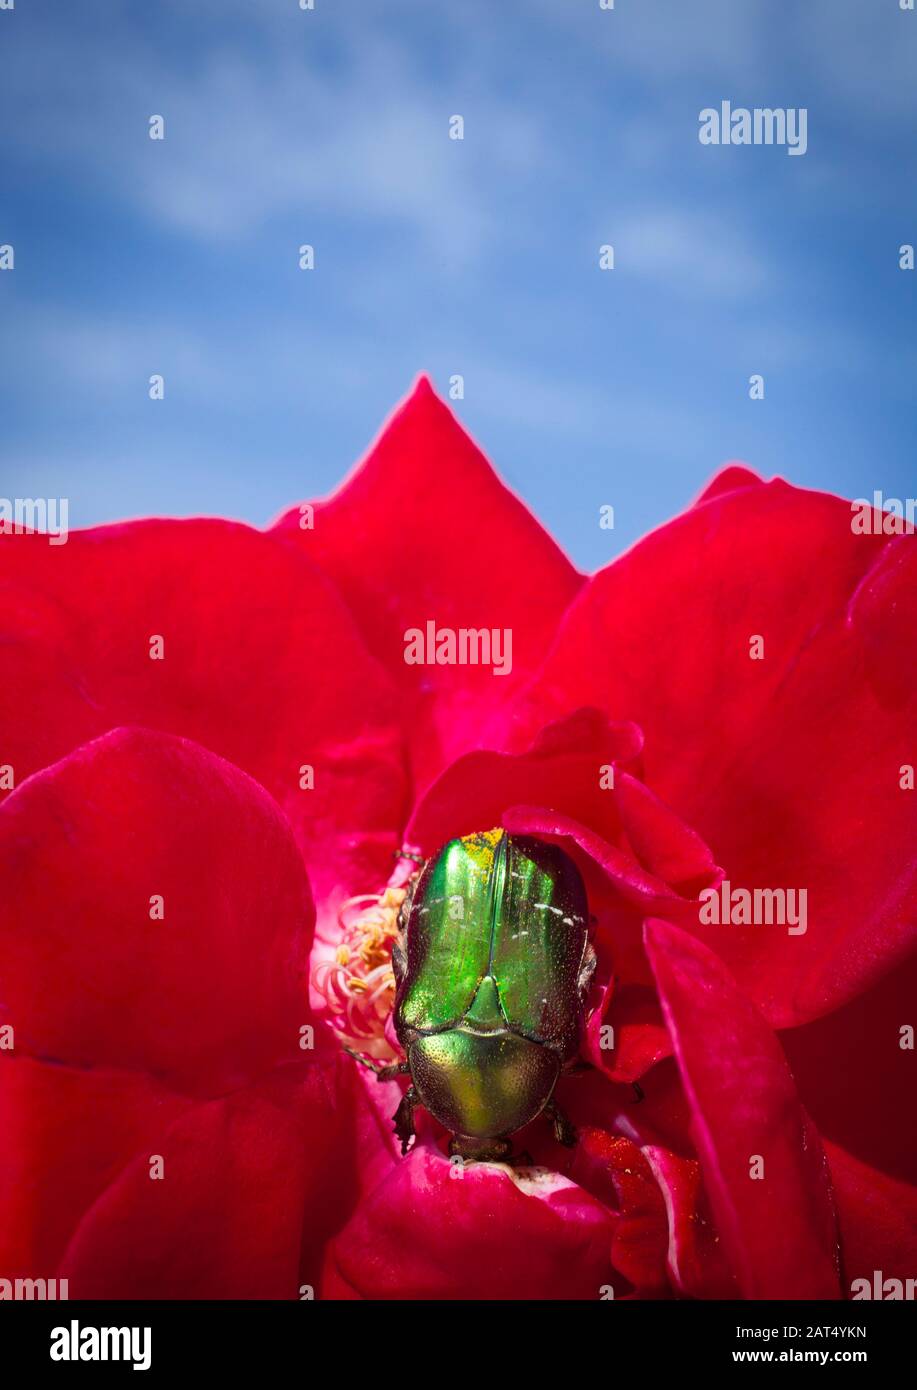 Ein grüner Rosenkäfer (Cetonia aurata) auf einer roten, Gartenrose. Rosenkeuler leben von Rosen und die Erwachsenen essen Blumen und Pollen. Stockfoto